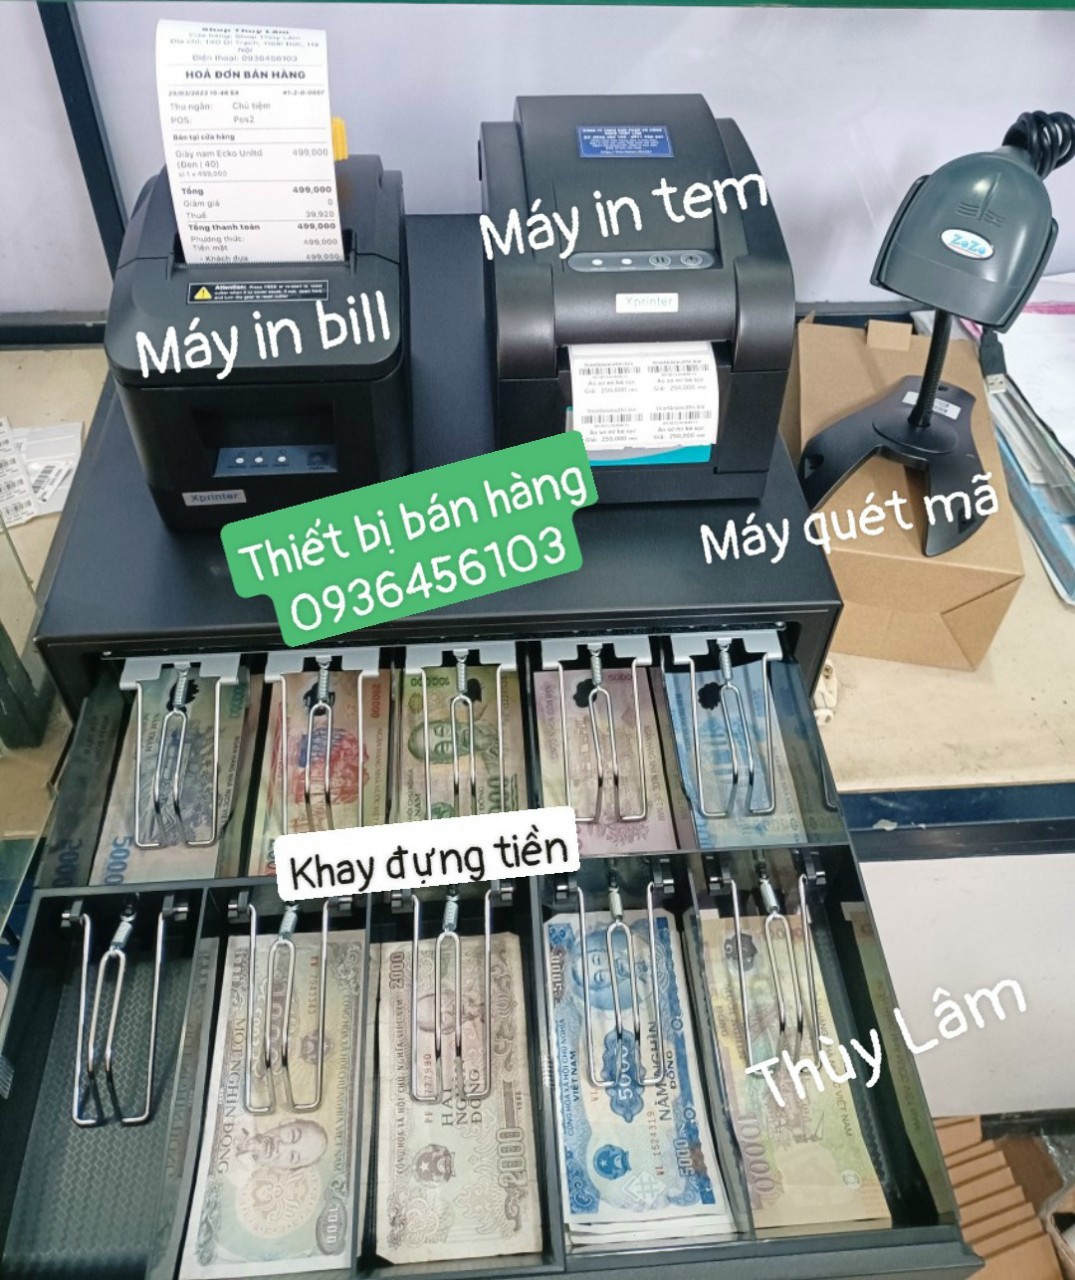 Thiết bị bán hàng cho shop: Máy in tem, Máy in bill, Máy quét mã, Khay đựng tiền